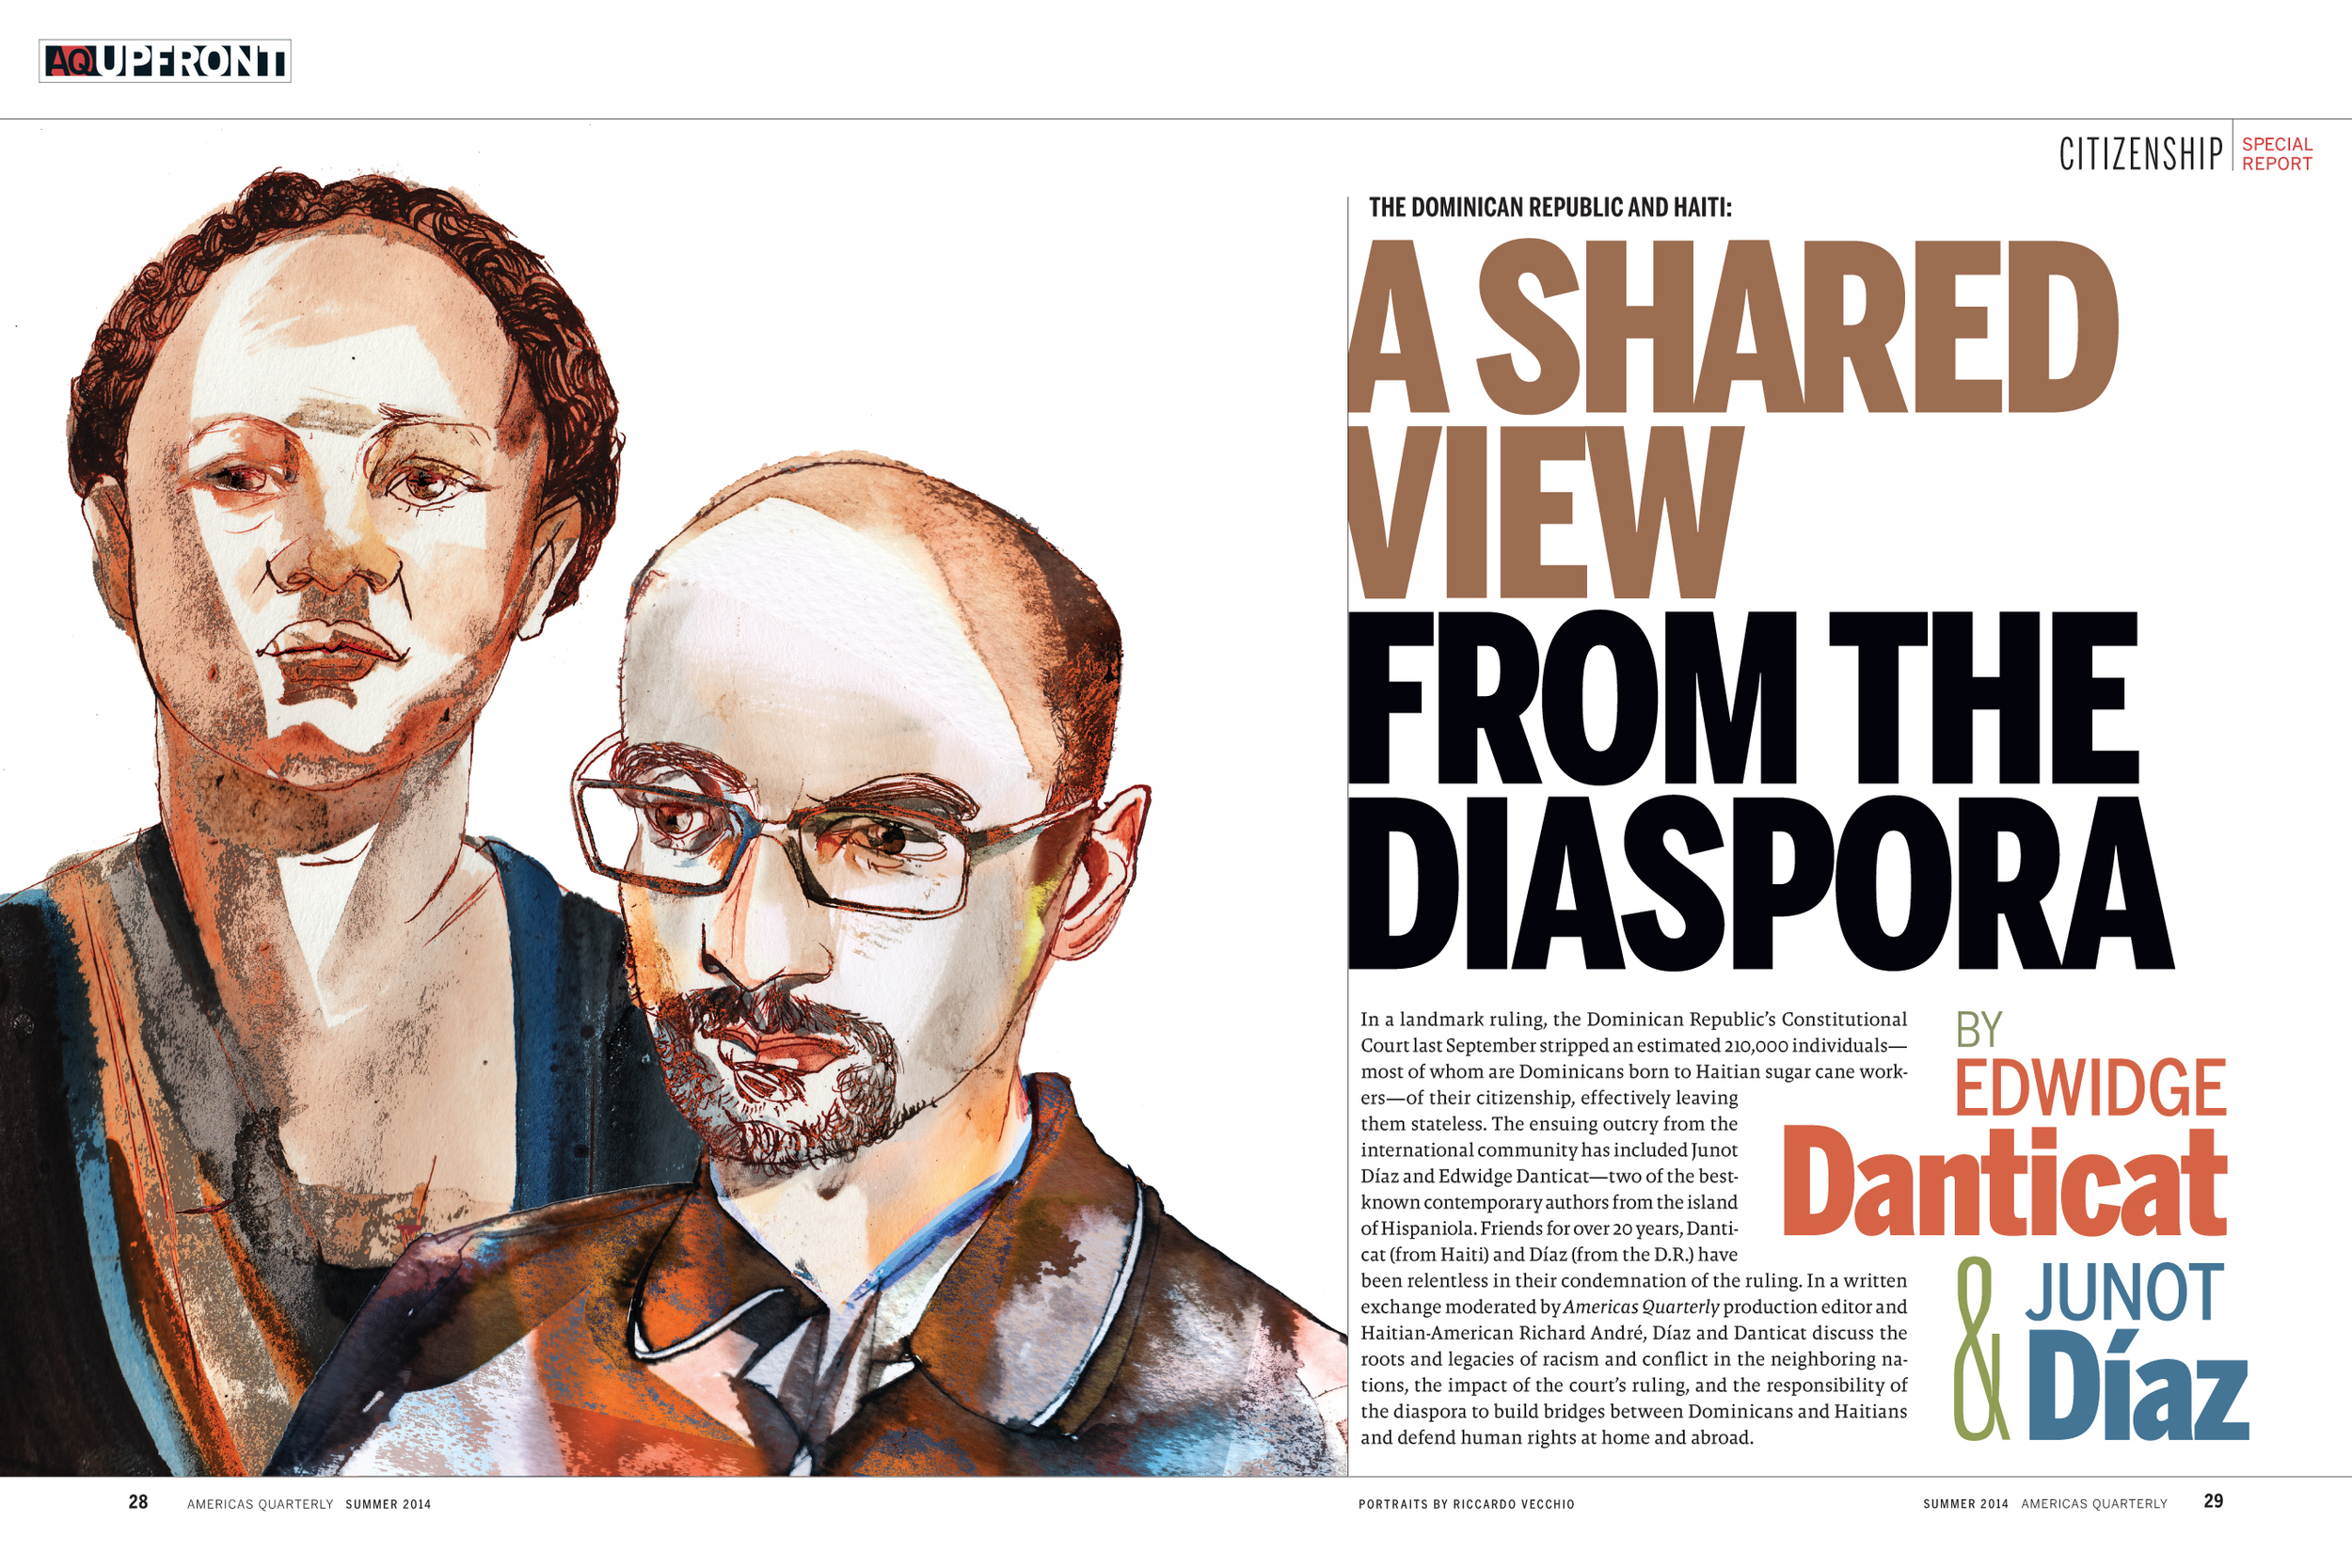 Diaz and Danticat AQ Magazine